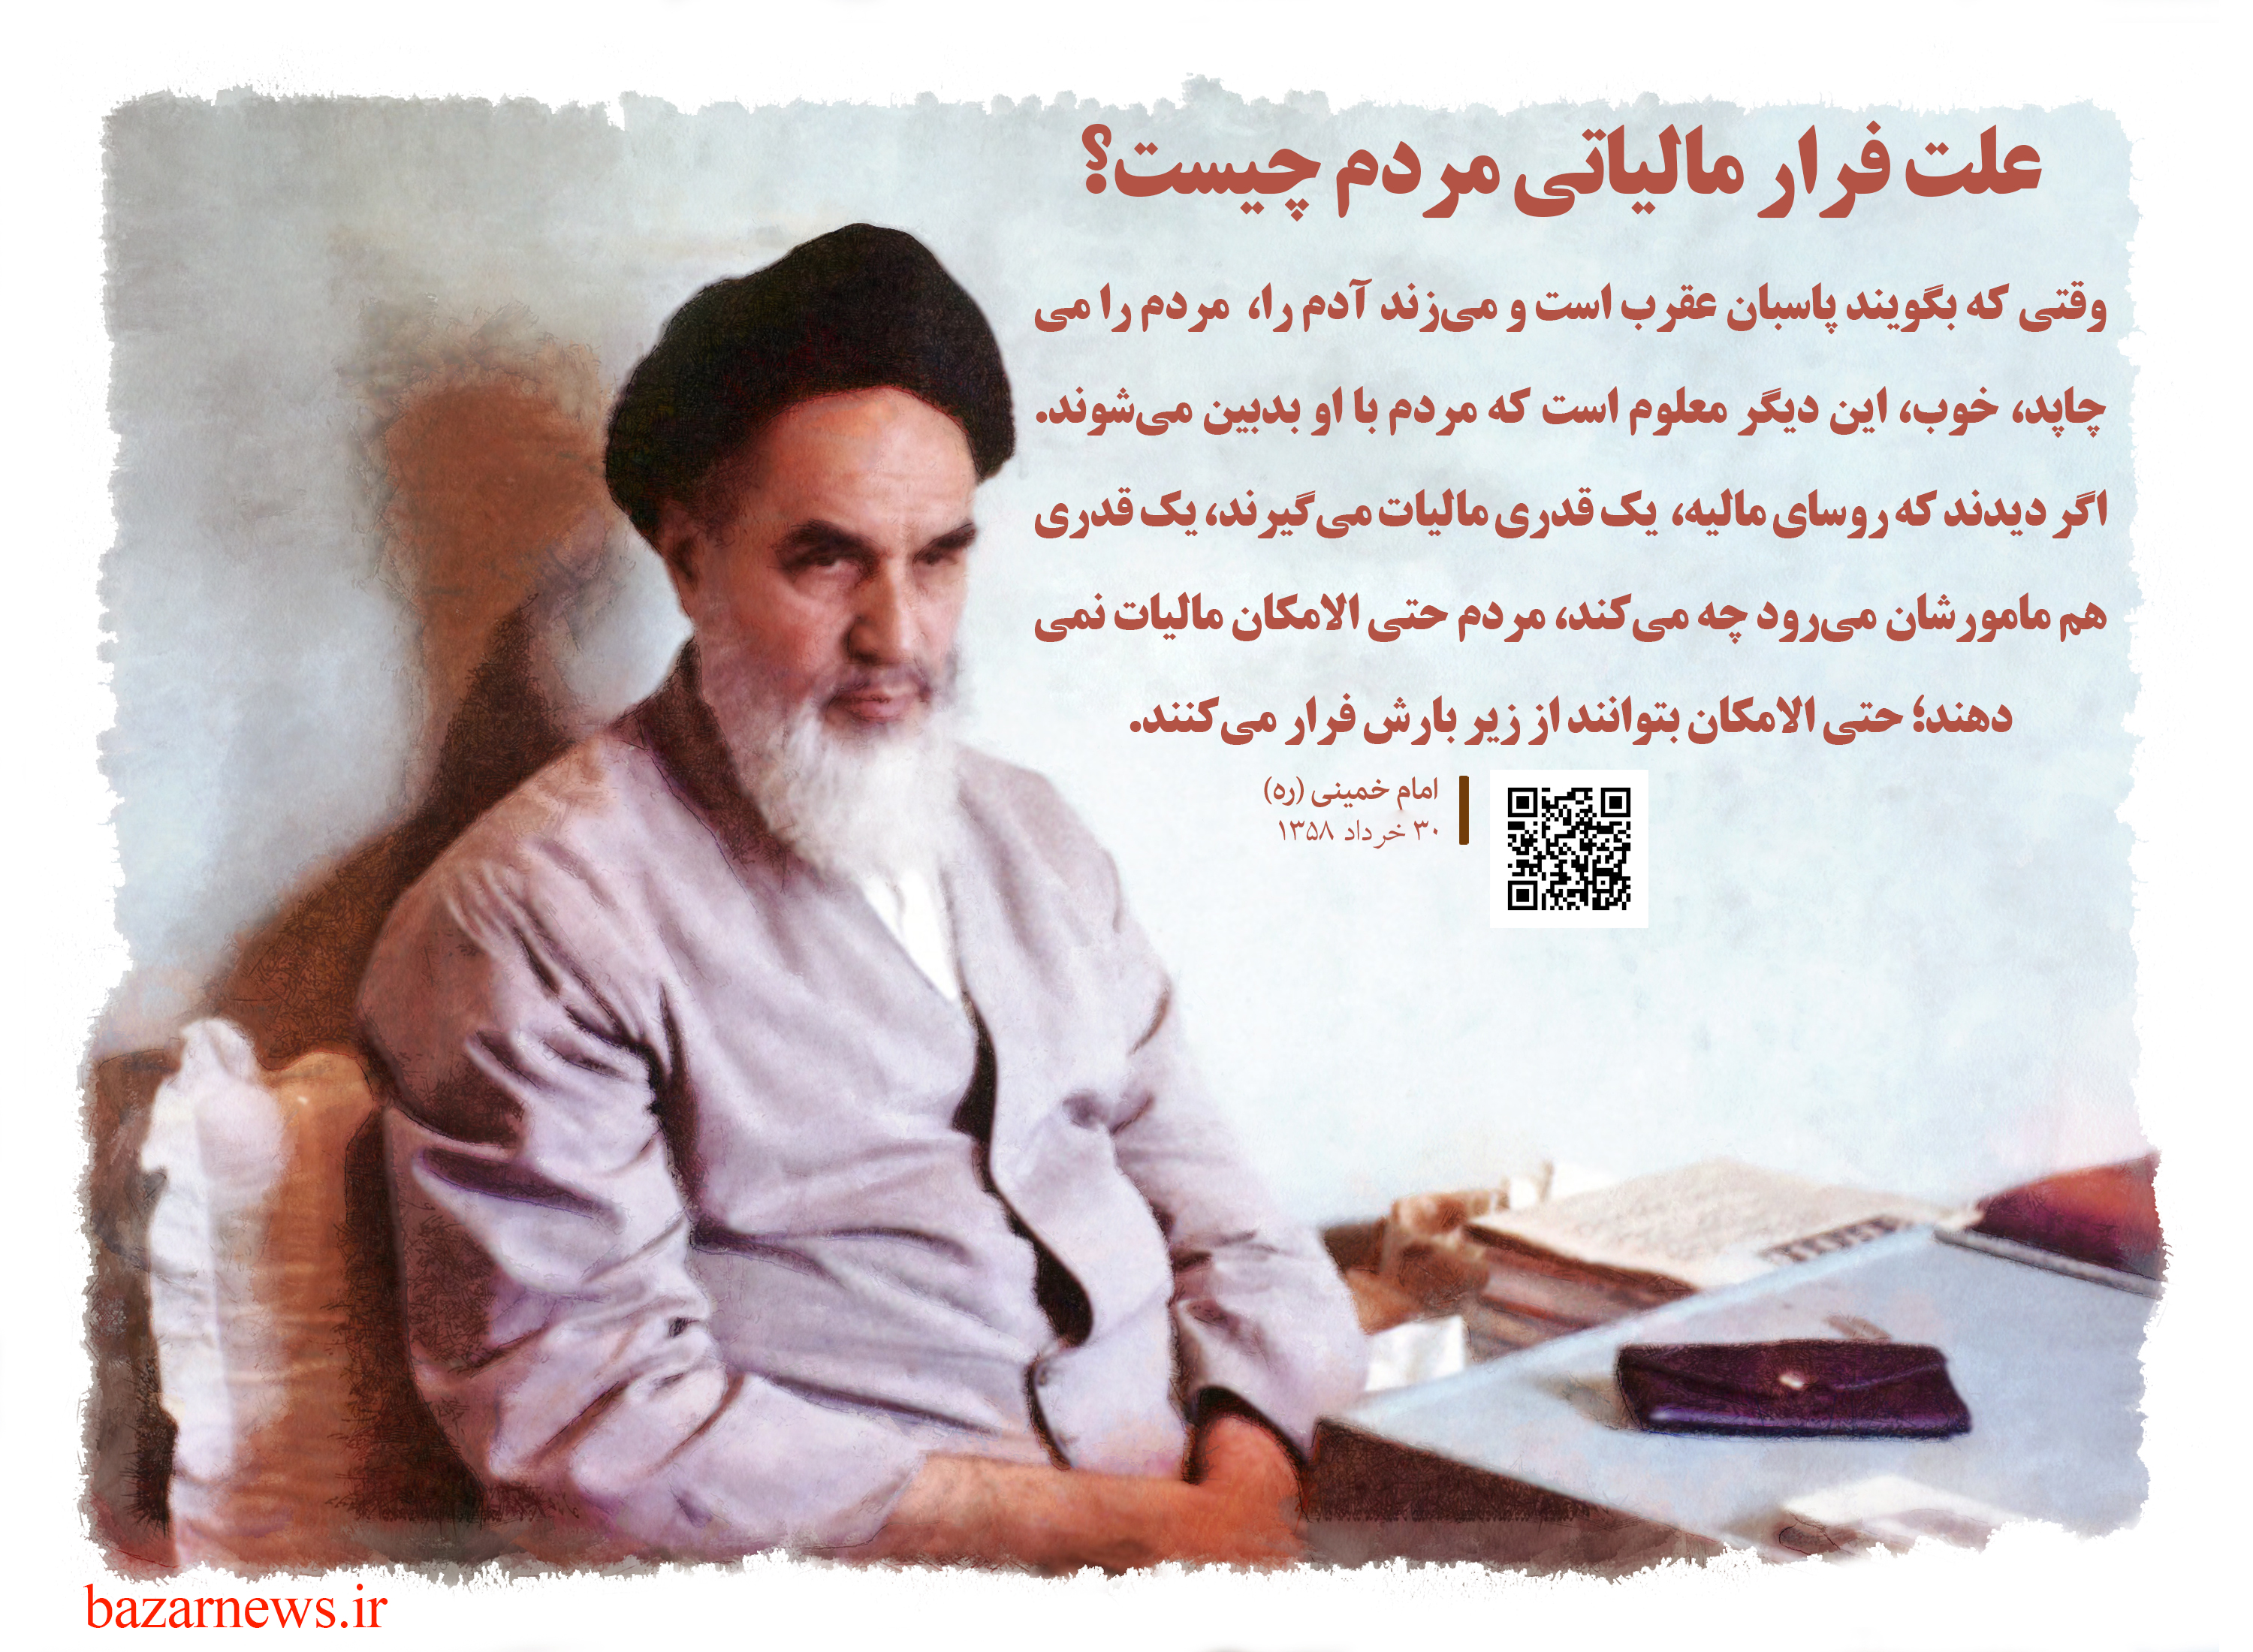 علت فرار مالیاتی از نظر امام خمینی/مامورین مالیات، مردم را عذاب ندهند! + صوت